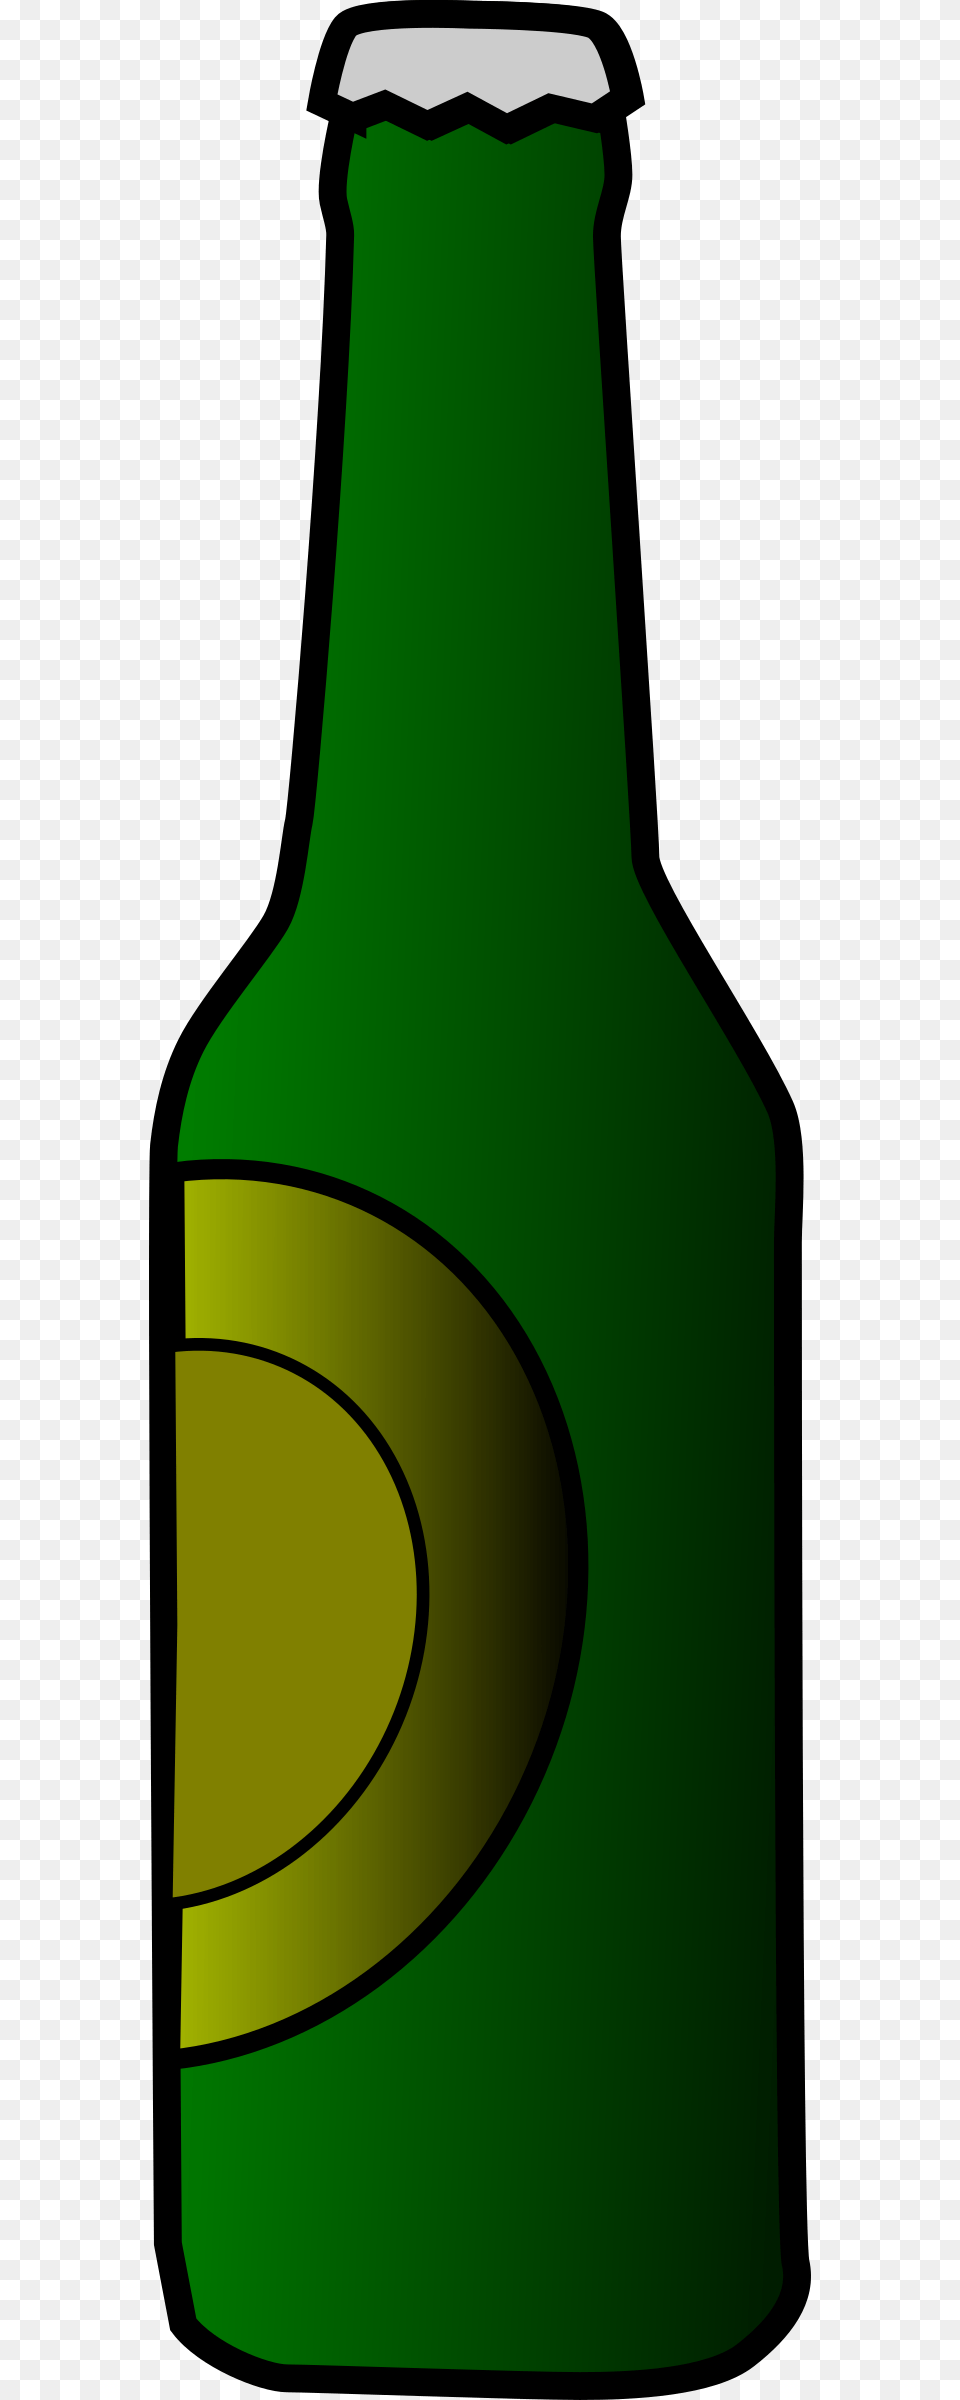 Bottle Clipart, Alcohol, Beer, Beer Bottle, Beverage Png